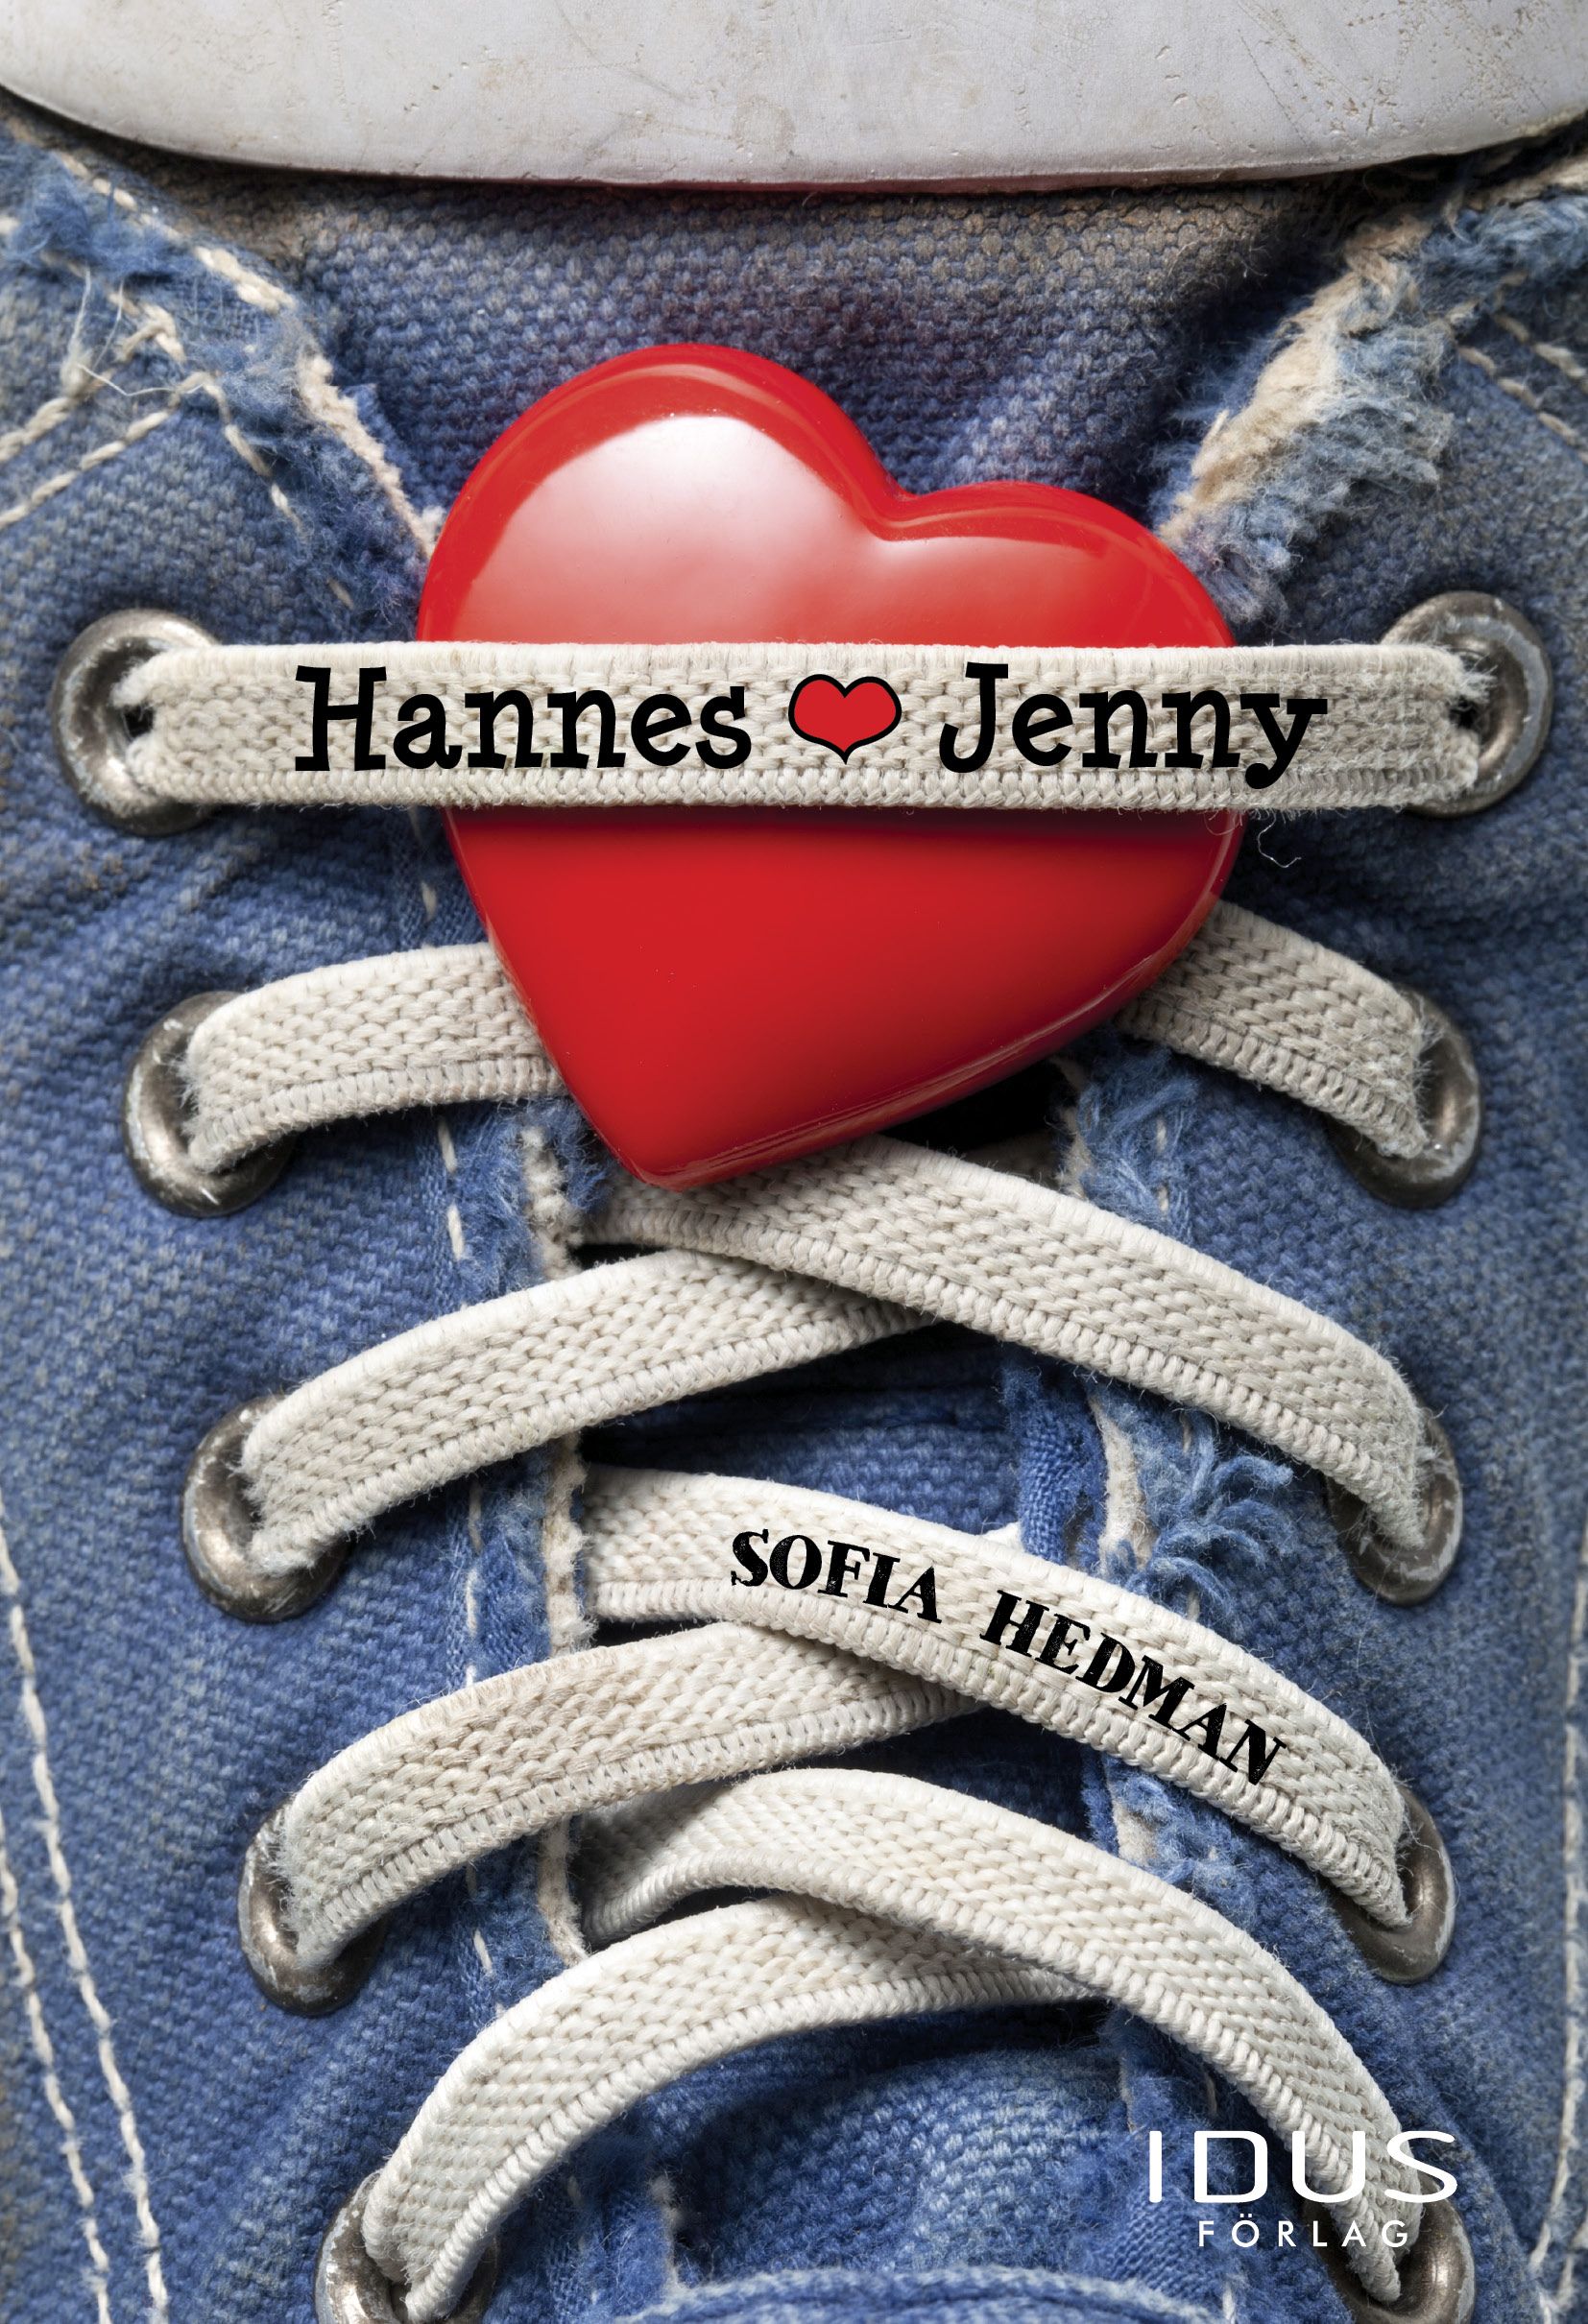 Hannes hjärta Jenny, e-bog af Sofia Hedman